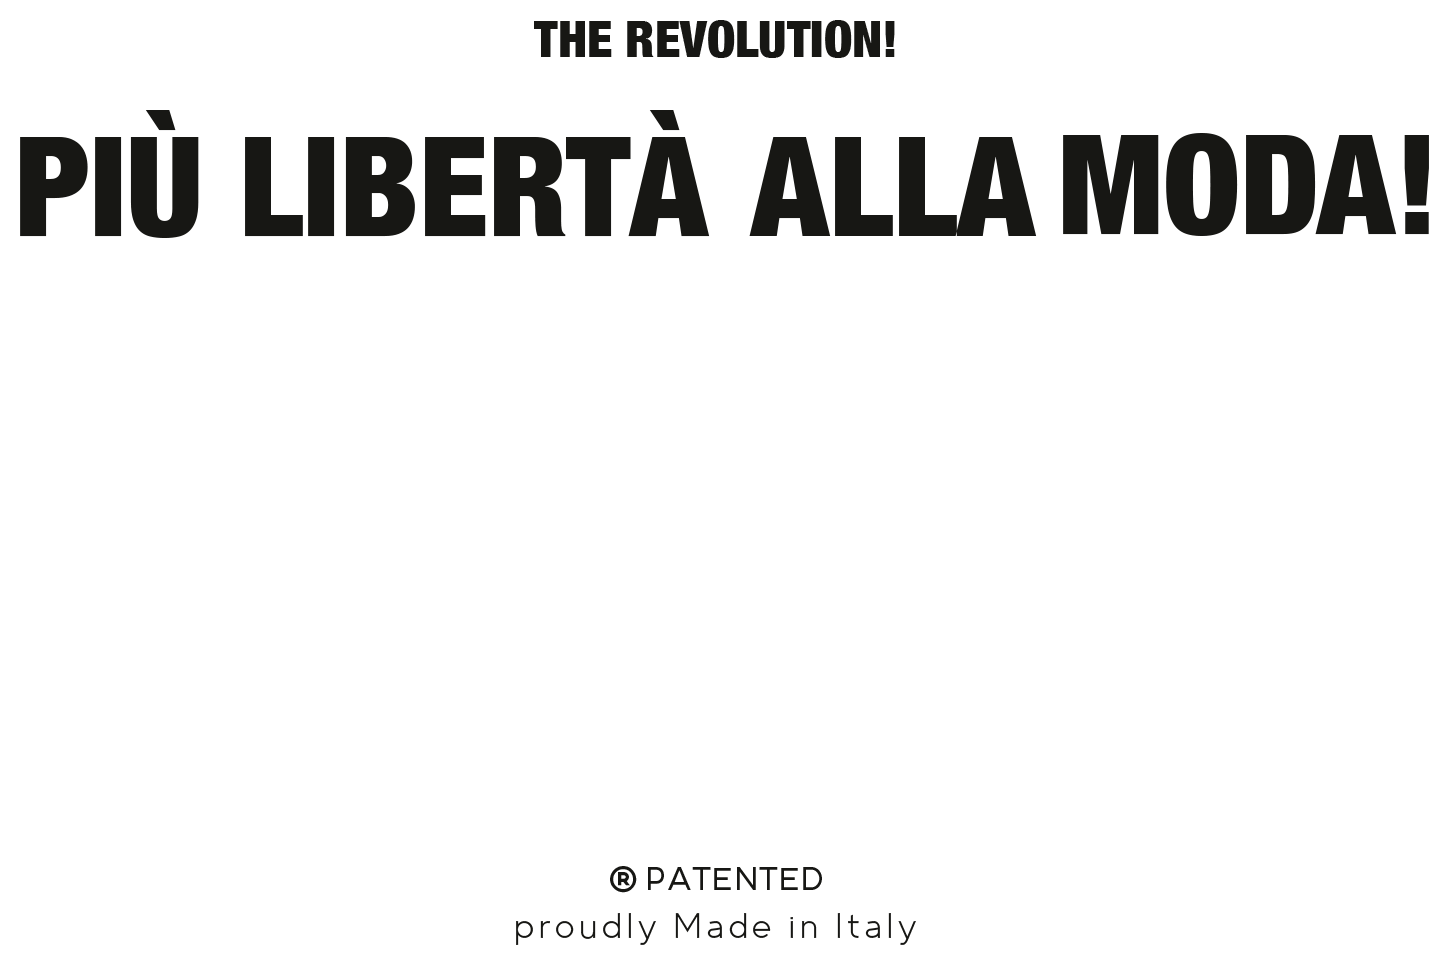 The revolution - Più libertà alla moda